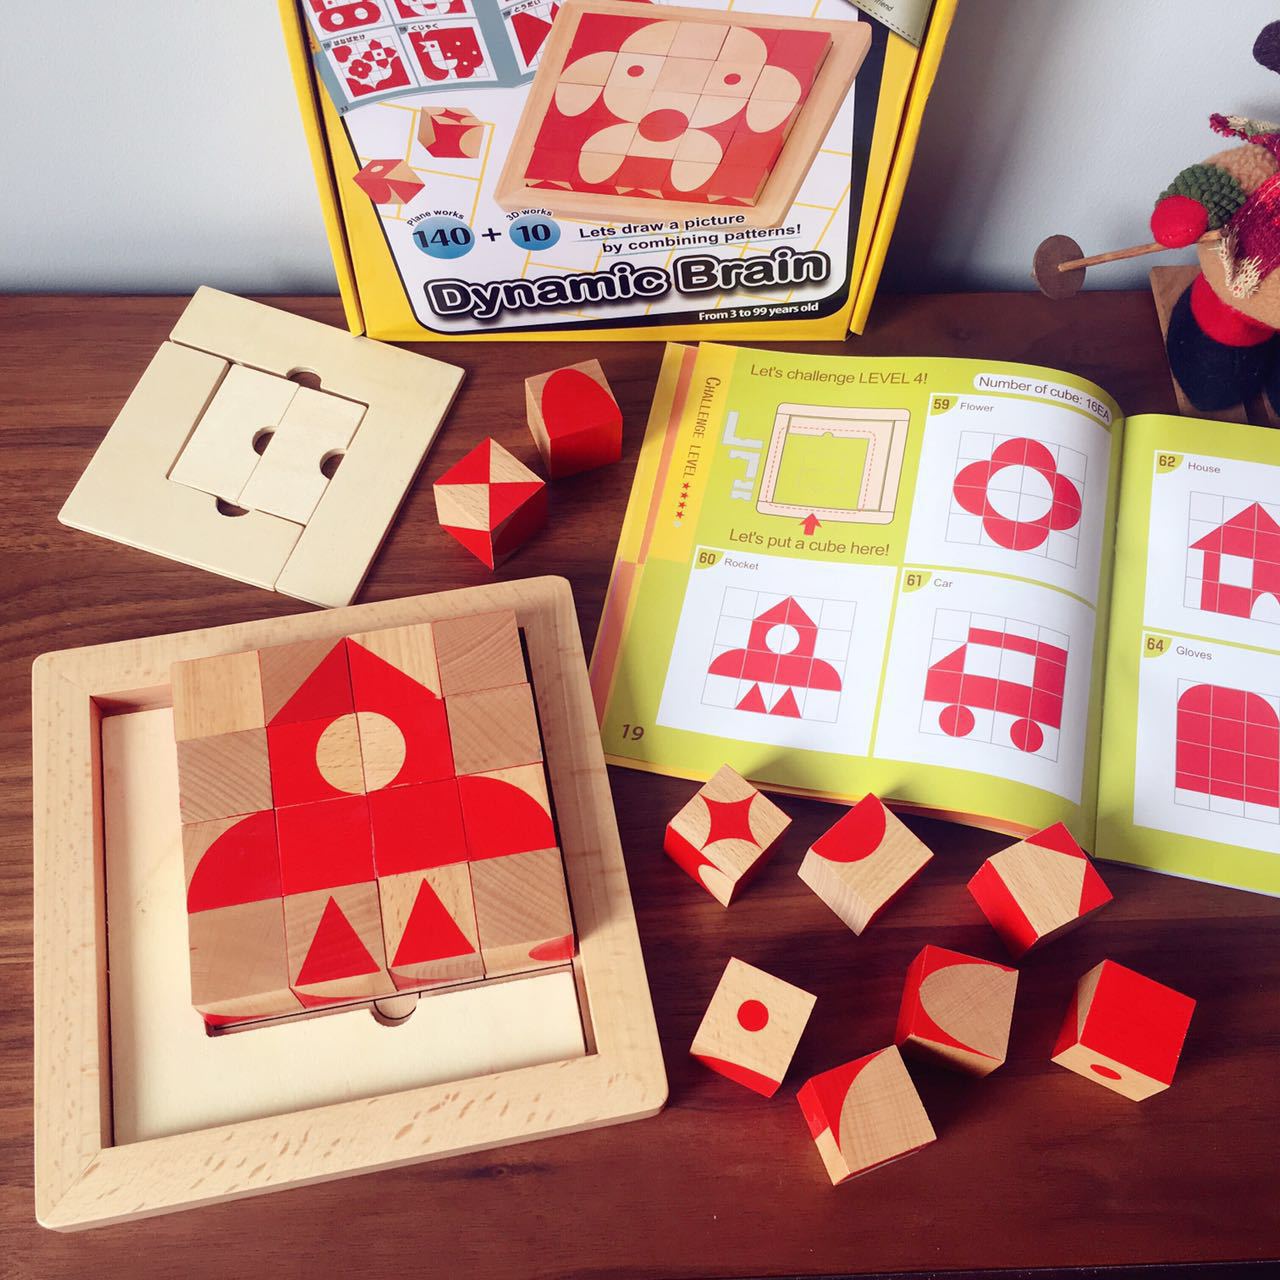 益智脑立方桌面游戏魔方3D立体方块积木木质拼图儿童早教益智玩具